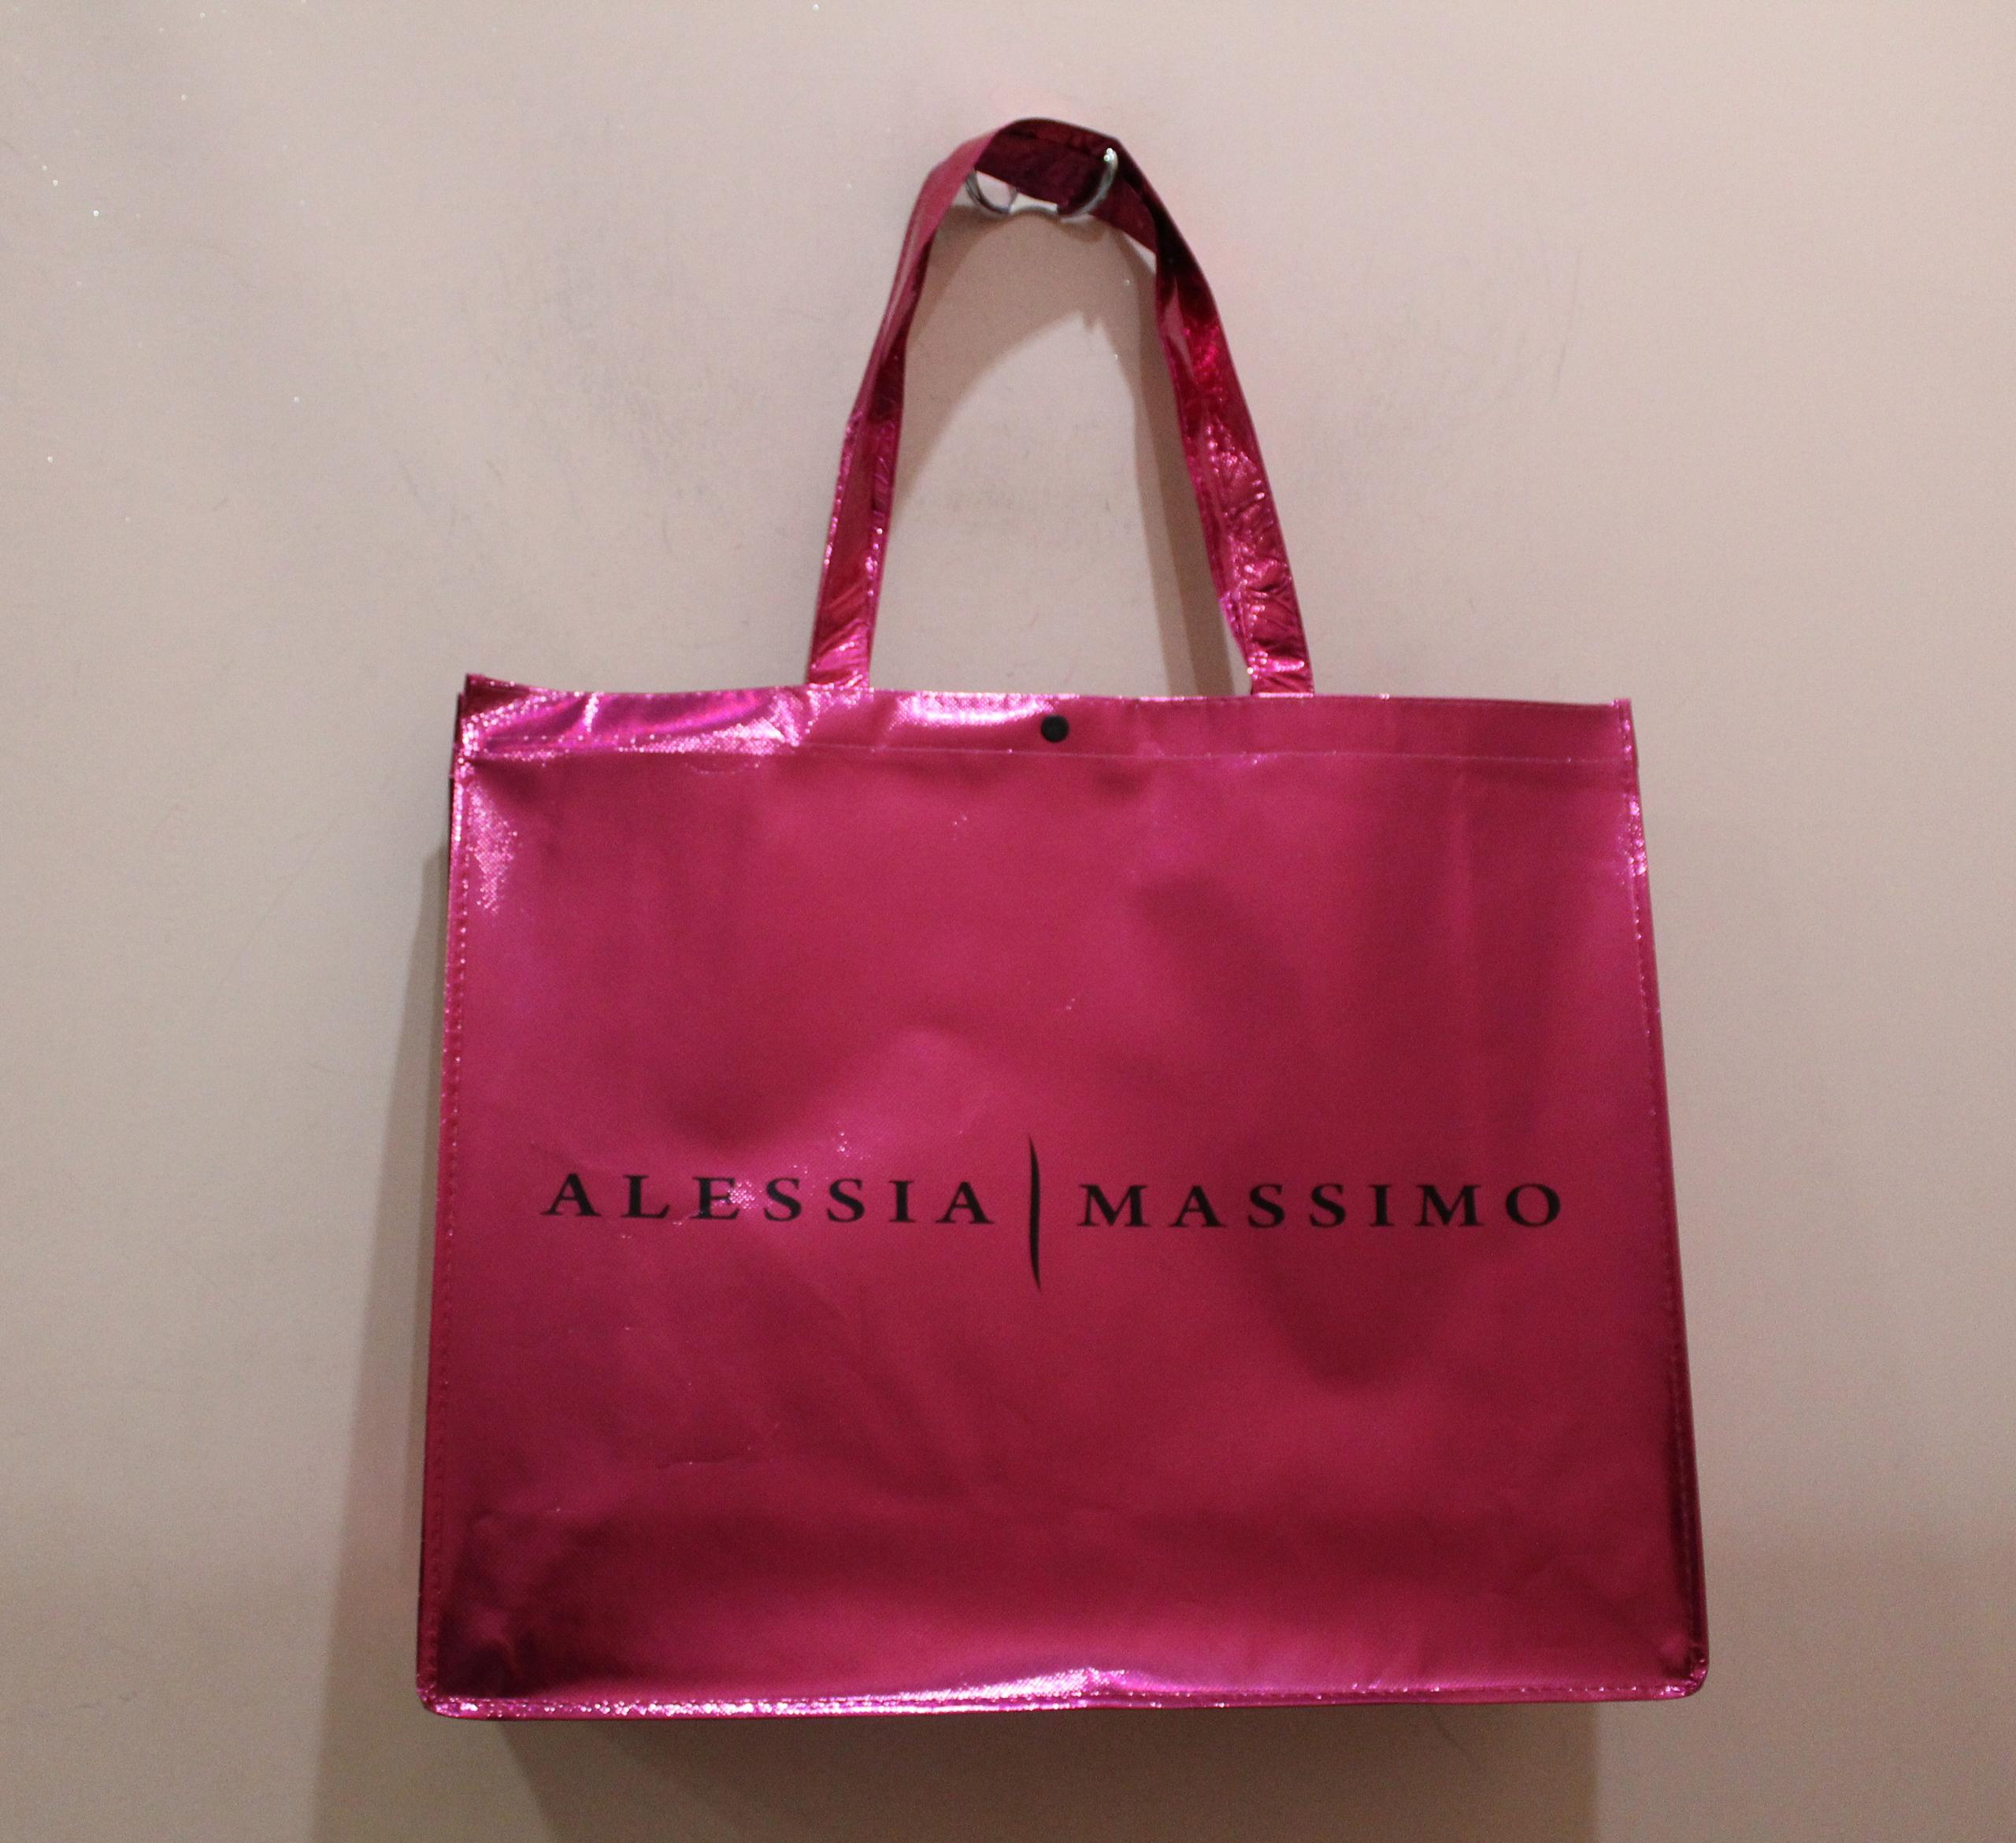 Shopper ALESSIA MASSIMO in regalo con il tuo ordine!